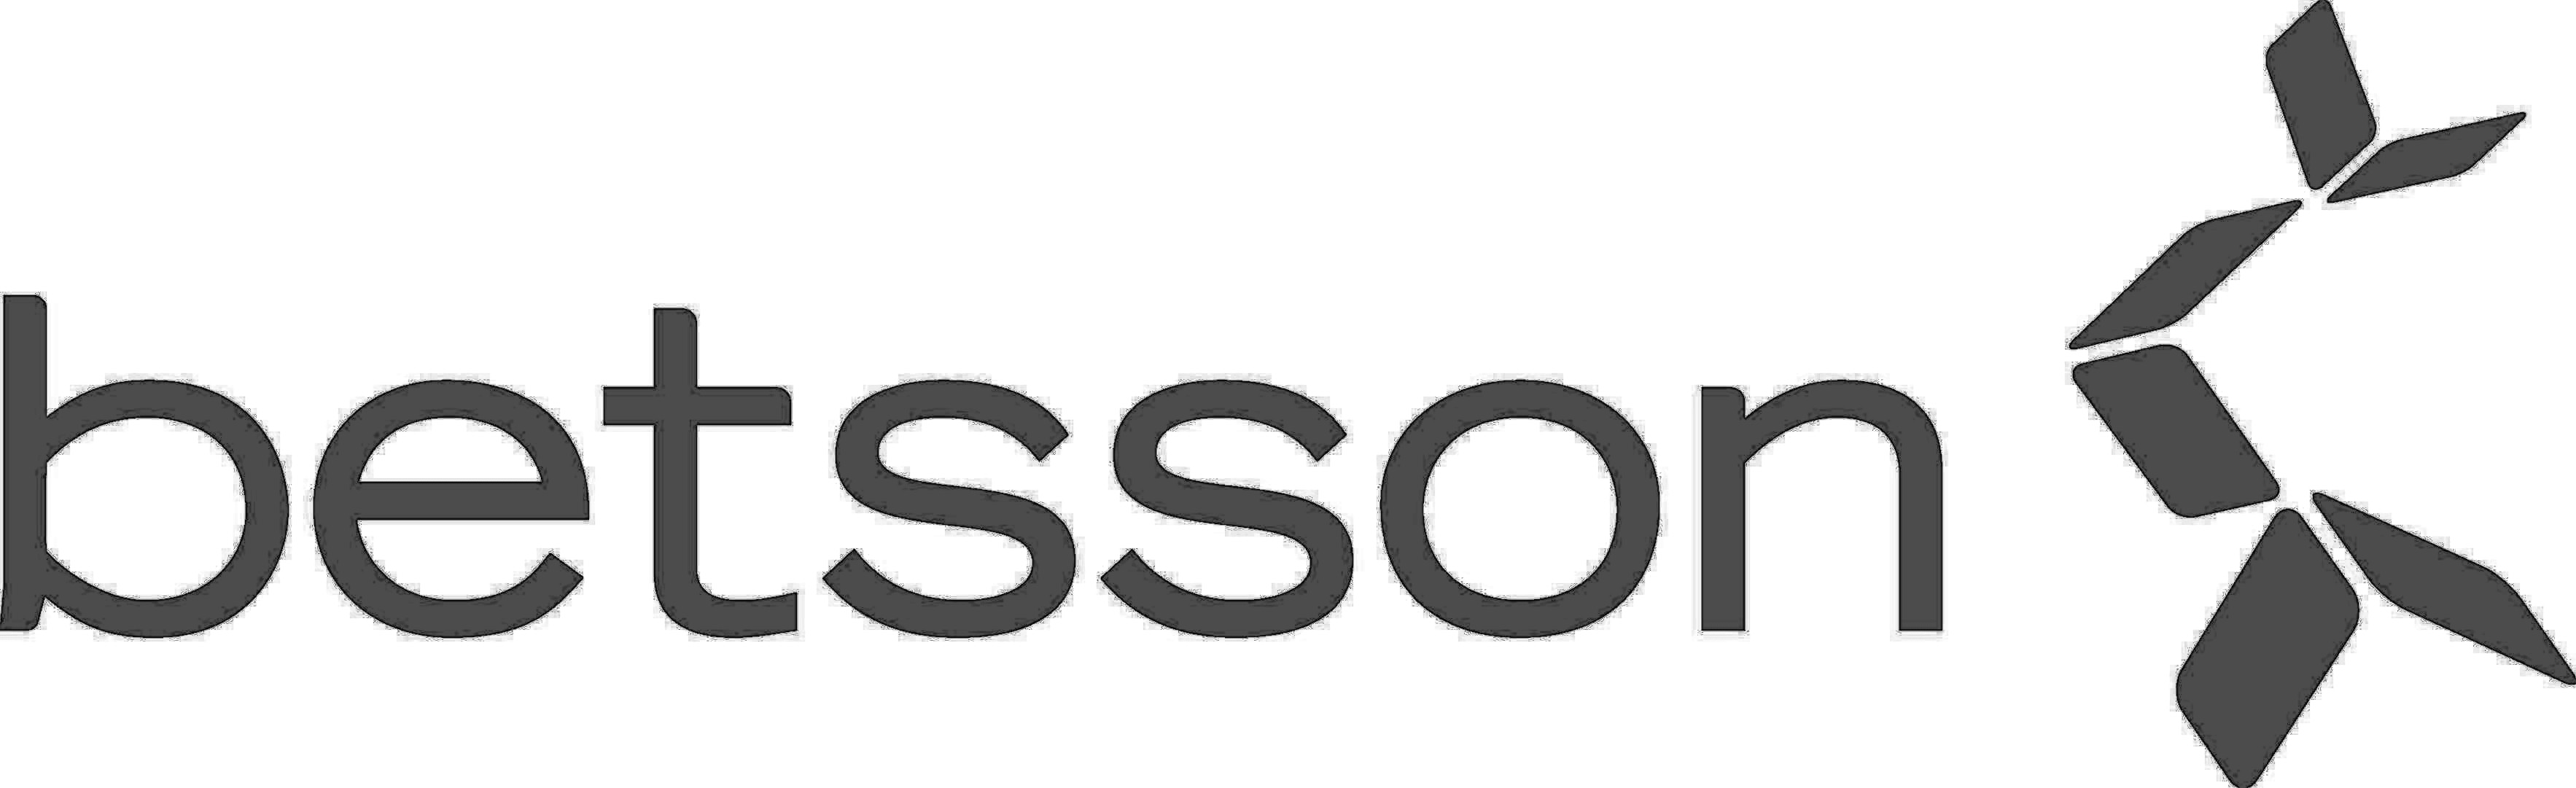 Betsson.jpg logo